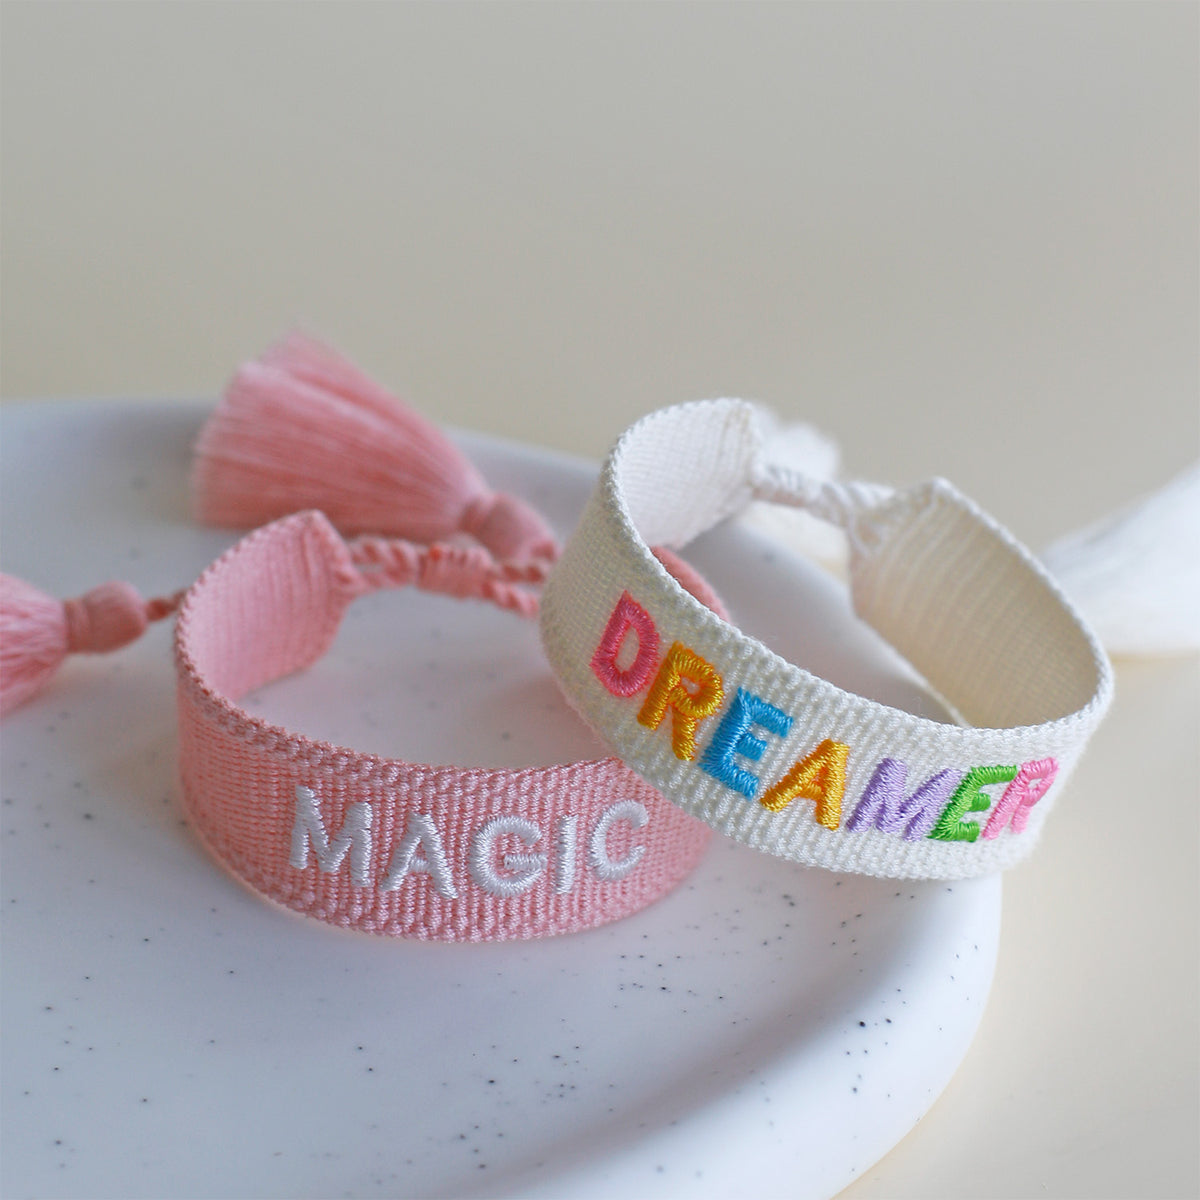 Woven Tassel Bracelet - Dreamer